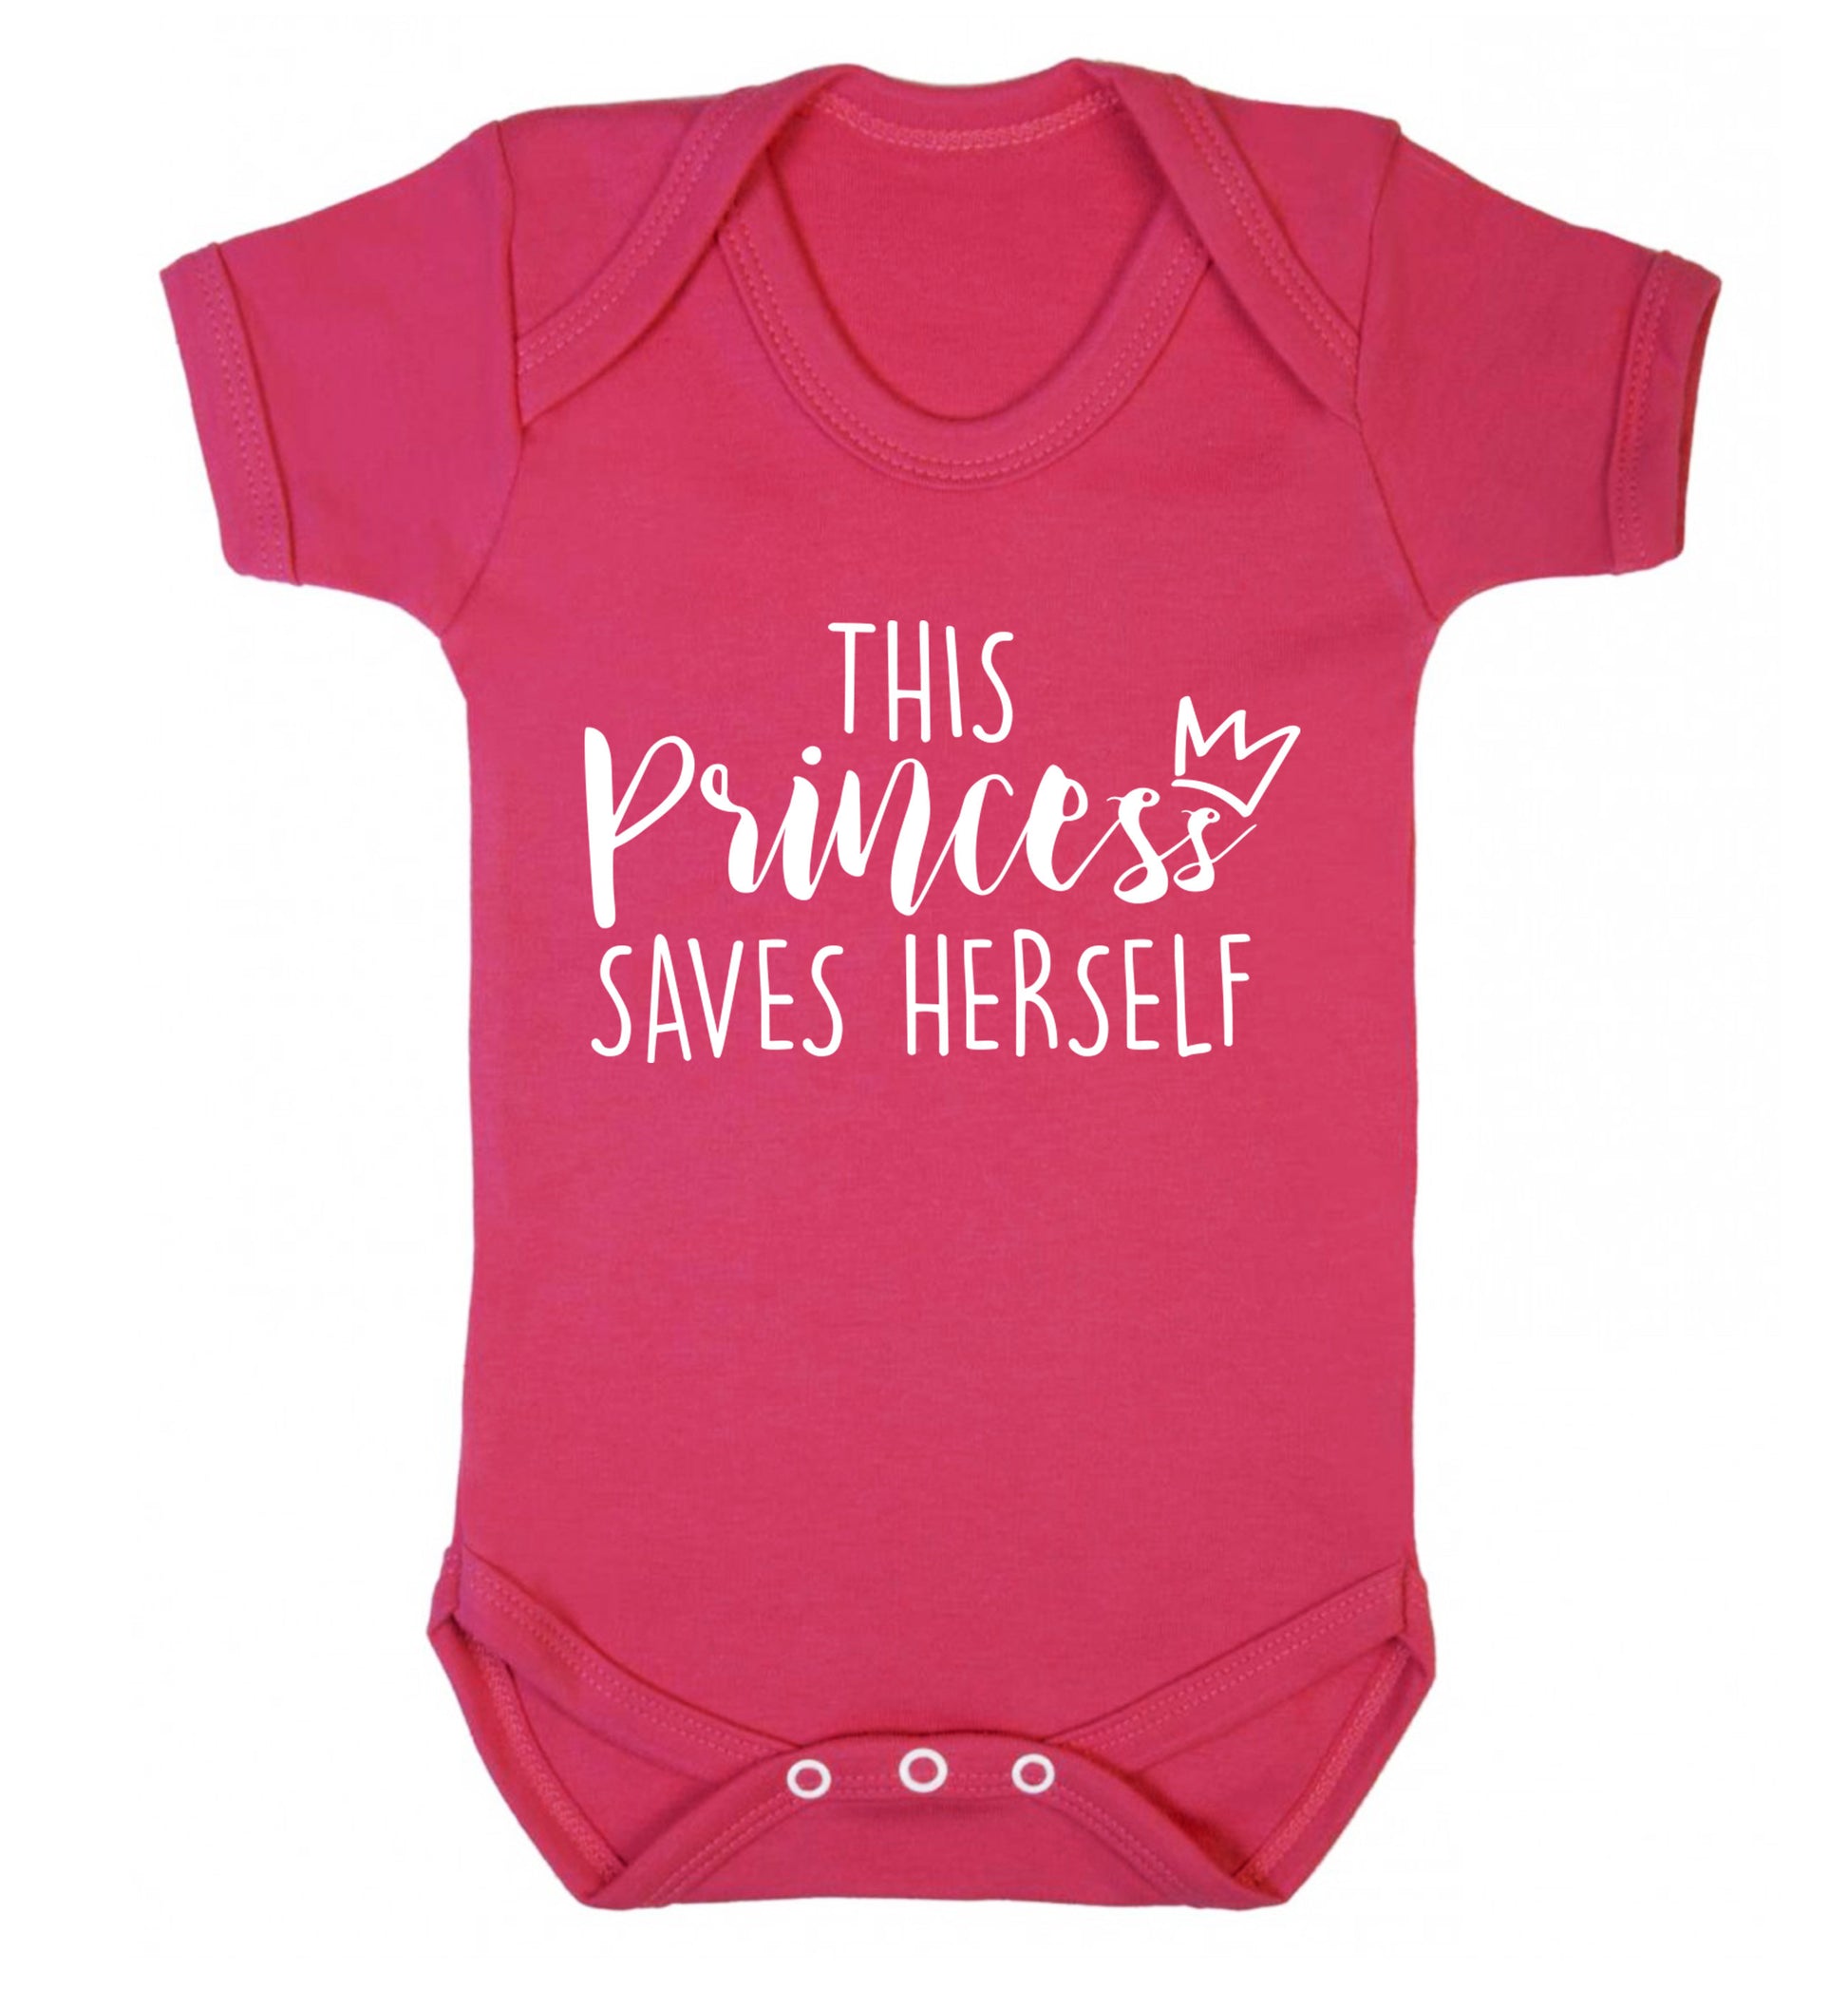 This princess saves herself Baby Vest dark pink 18-24 months